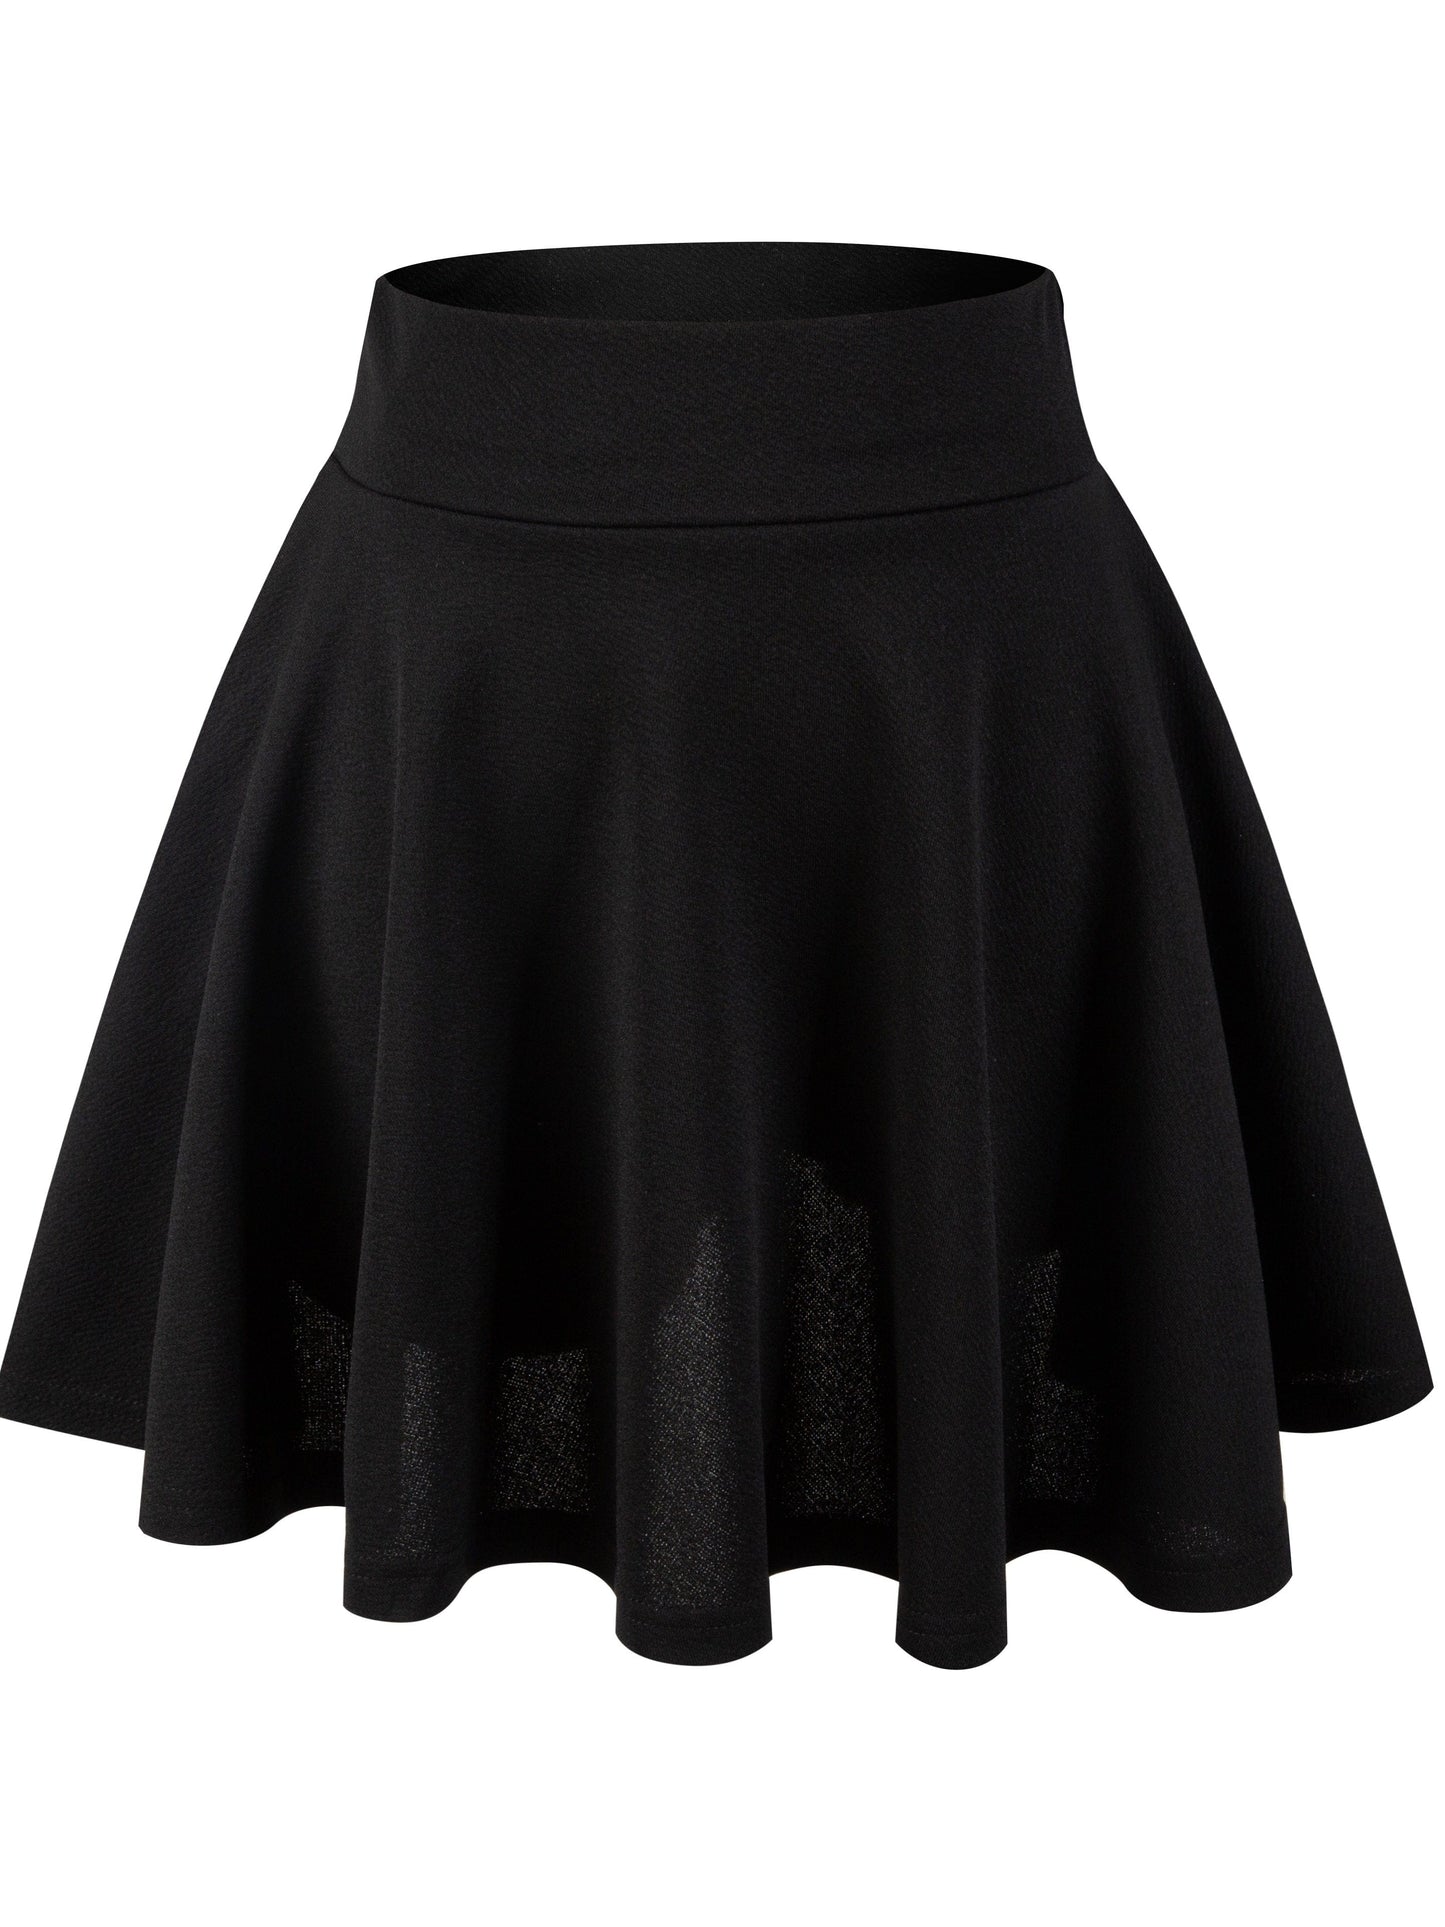 Casual Solid High Waist Pleated Skater Skirt Mini Dress DRE231012137BLAXS(2) Black / XS(2)